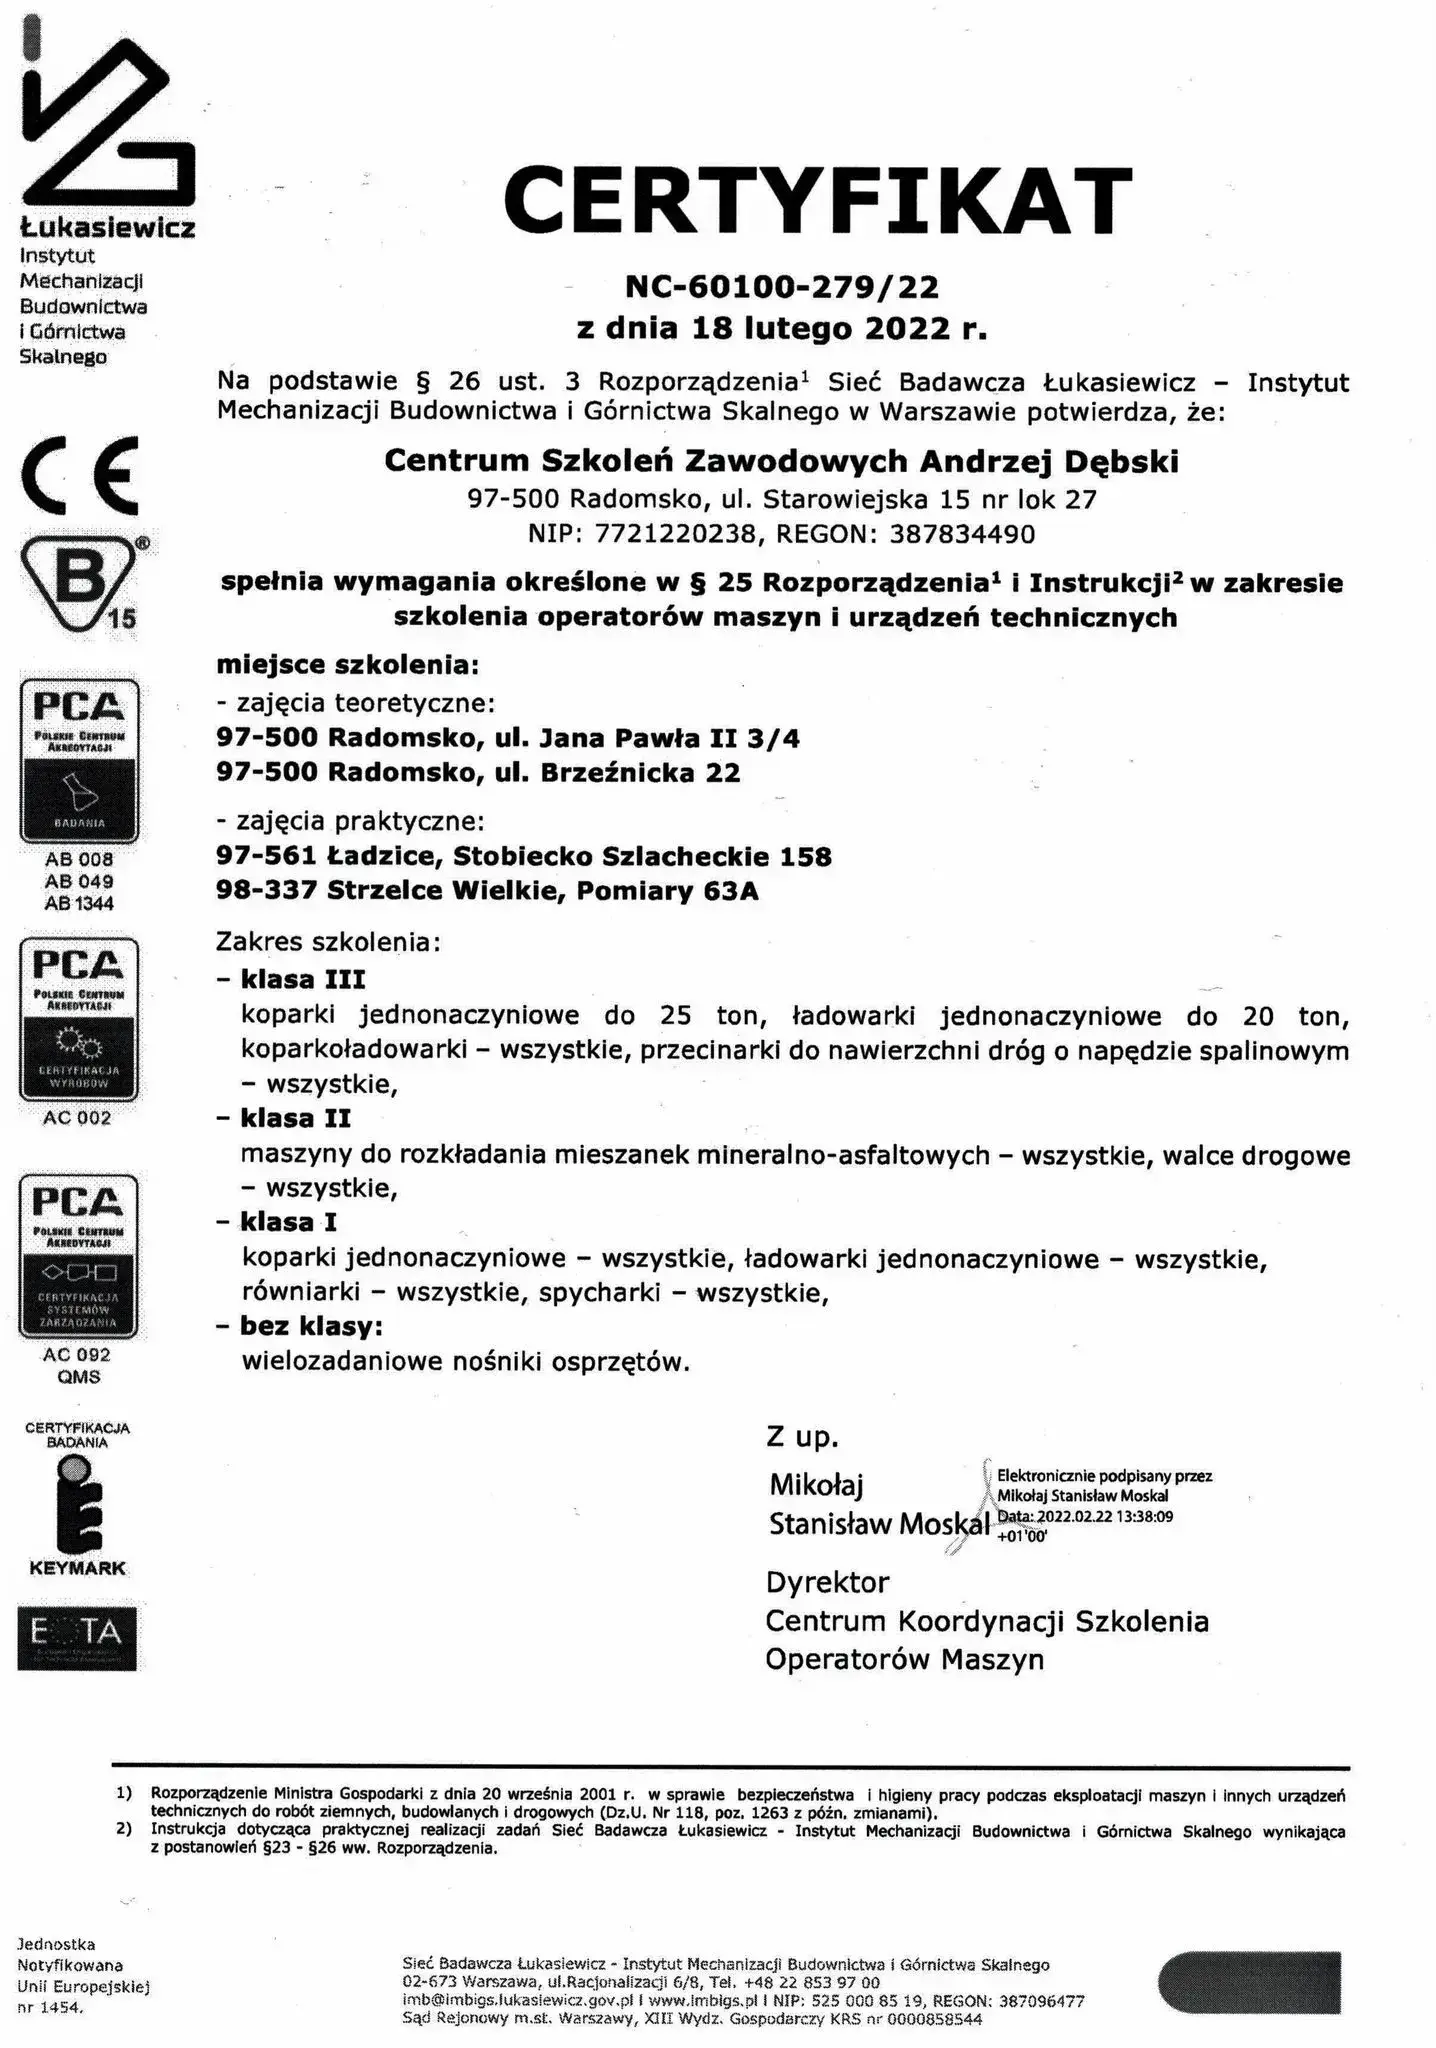 certyfikat centrum szkoleń zawodowych radomsko